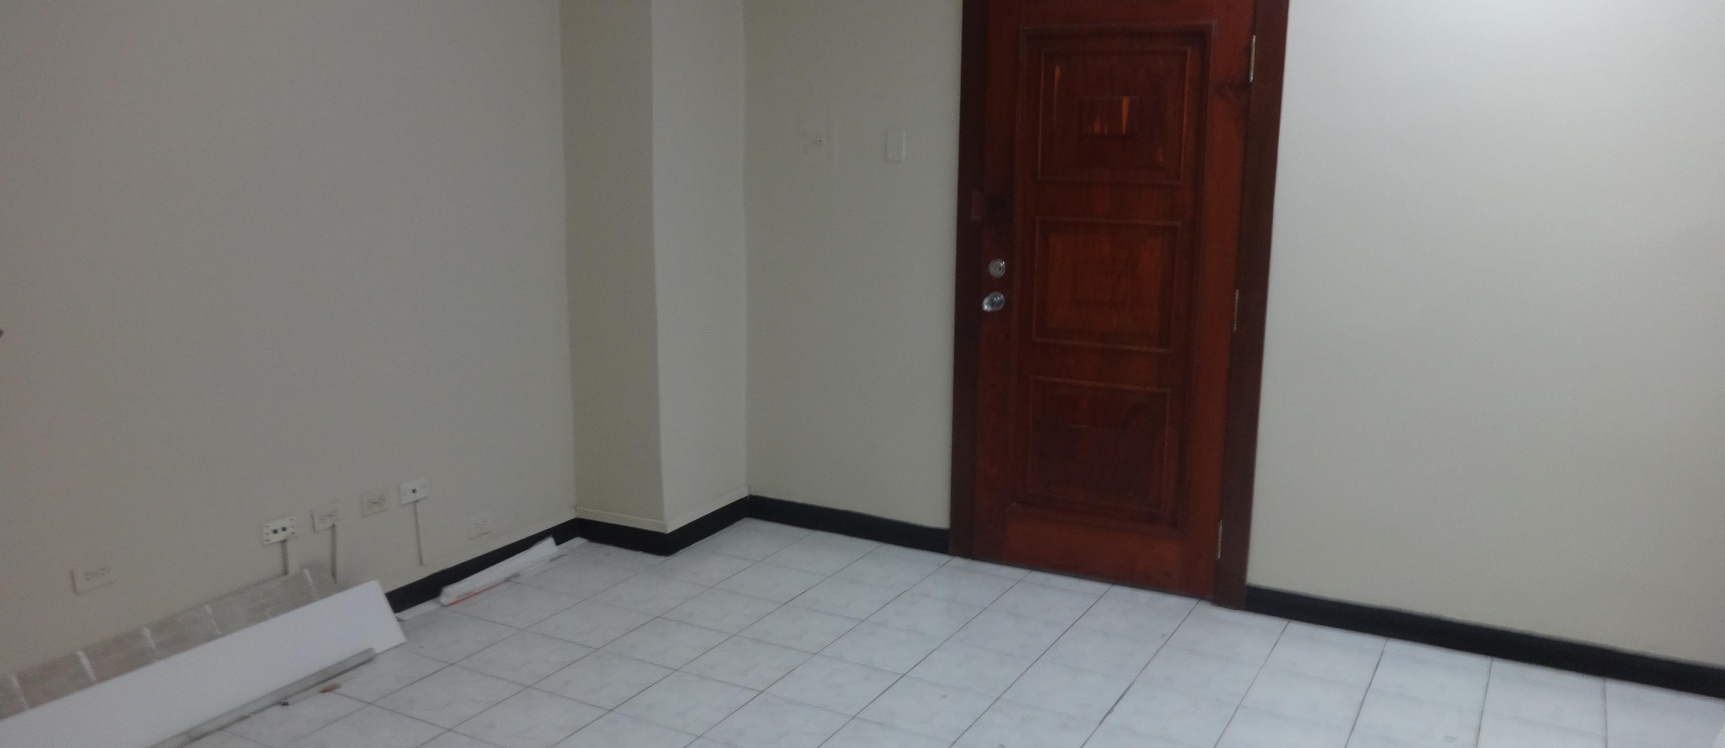 GeoBienes - Oficina de alquiler en el centro de Guayaquil, Av. 9 de Octubre - Plusvalia Guayaquil Casas de venta y alquiler Inmobiliaria Ecuador